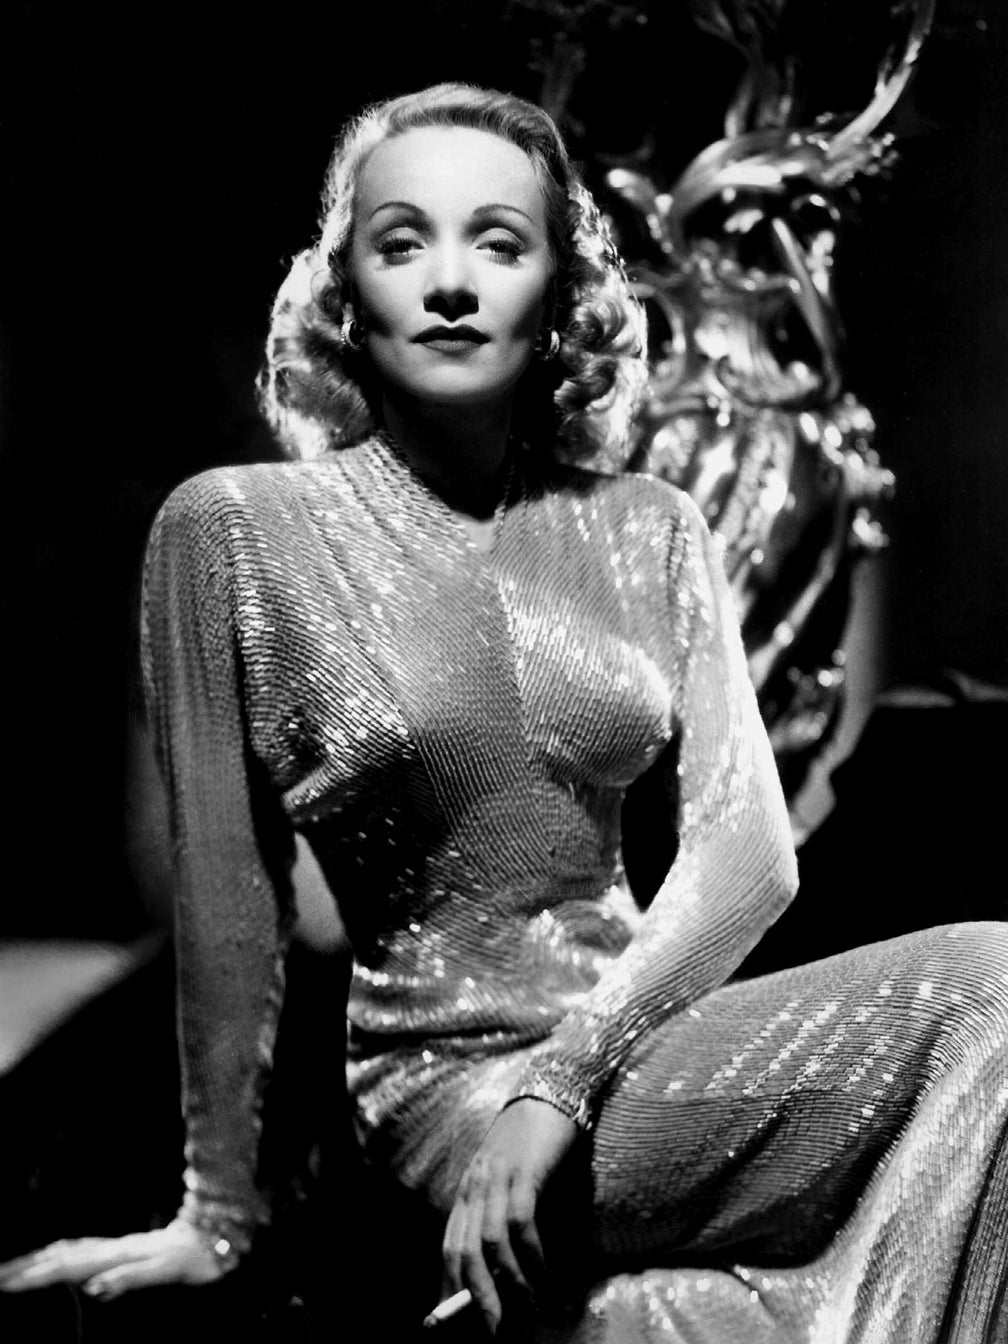 Marlene Dietrich inspired La Fille de Berlin and Knize Ten